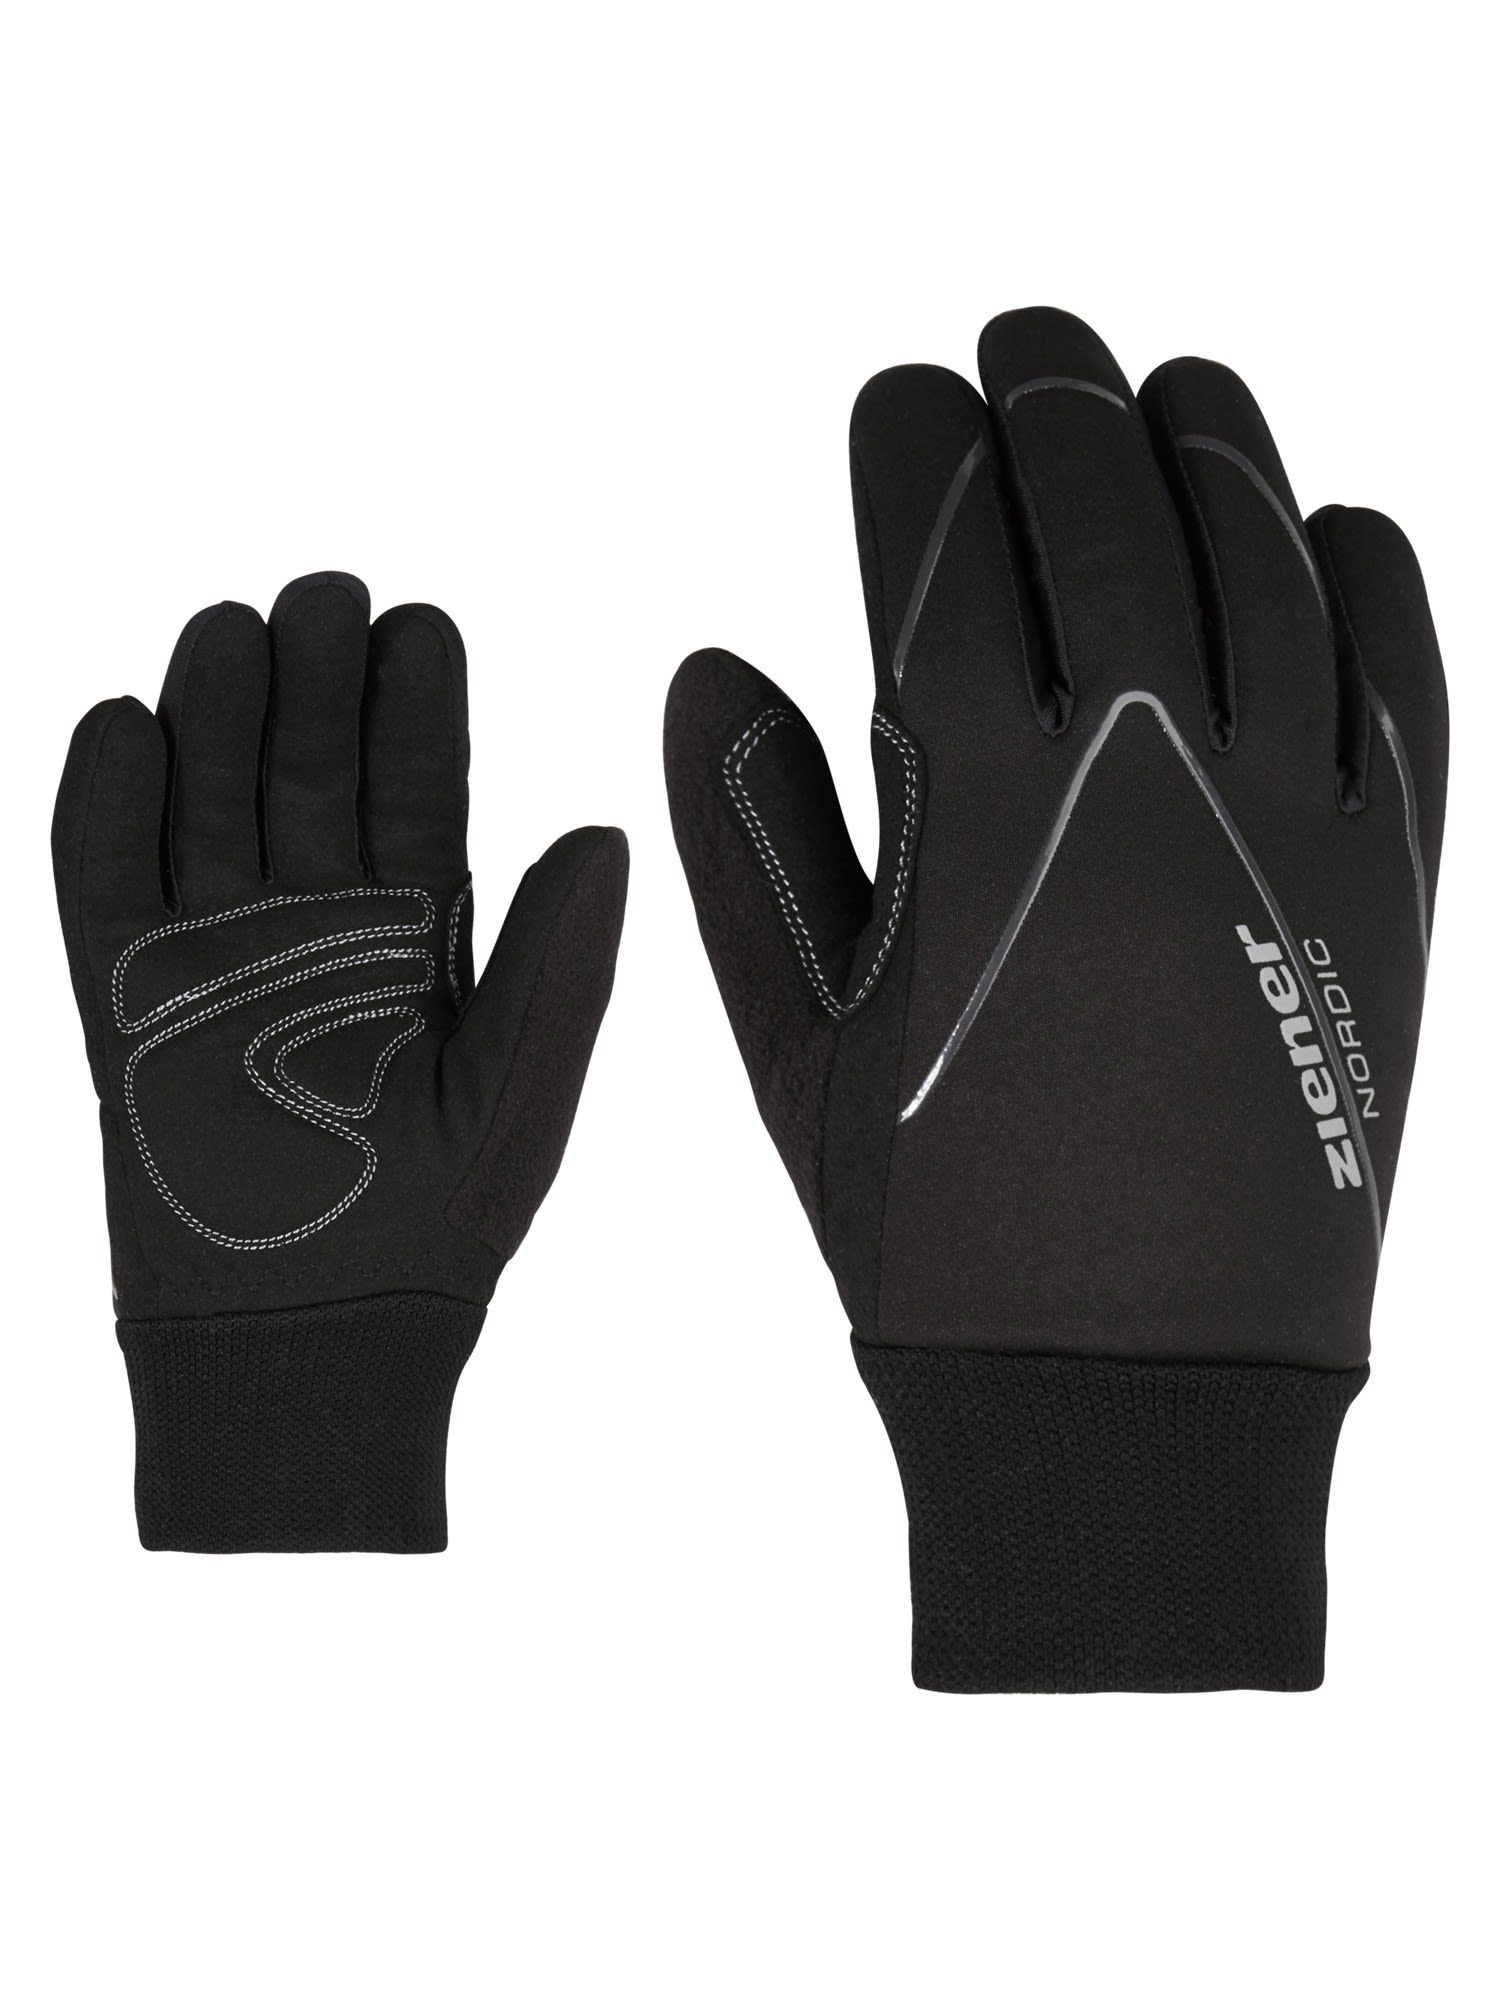 Ziener Ziener Unico Junior Glove Kinder Fleecehandschuhe Accessoires Black